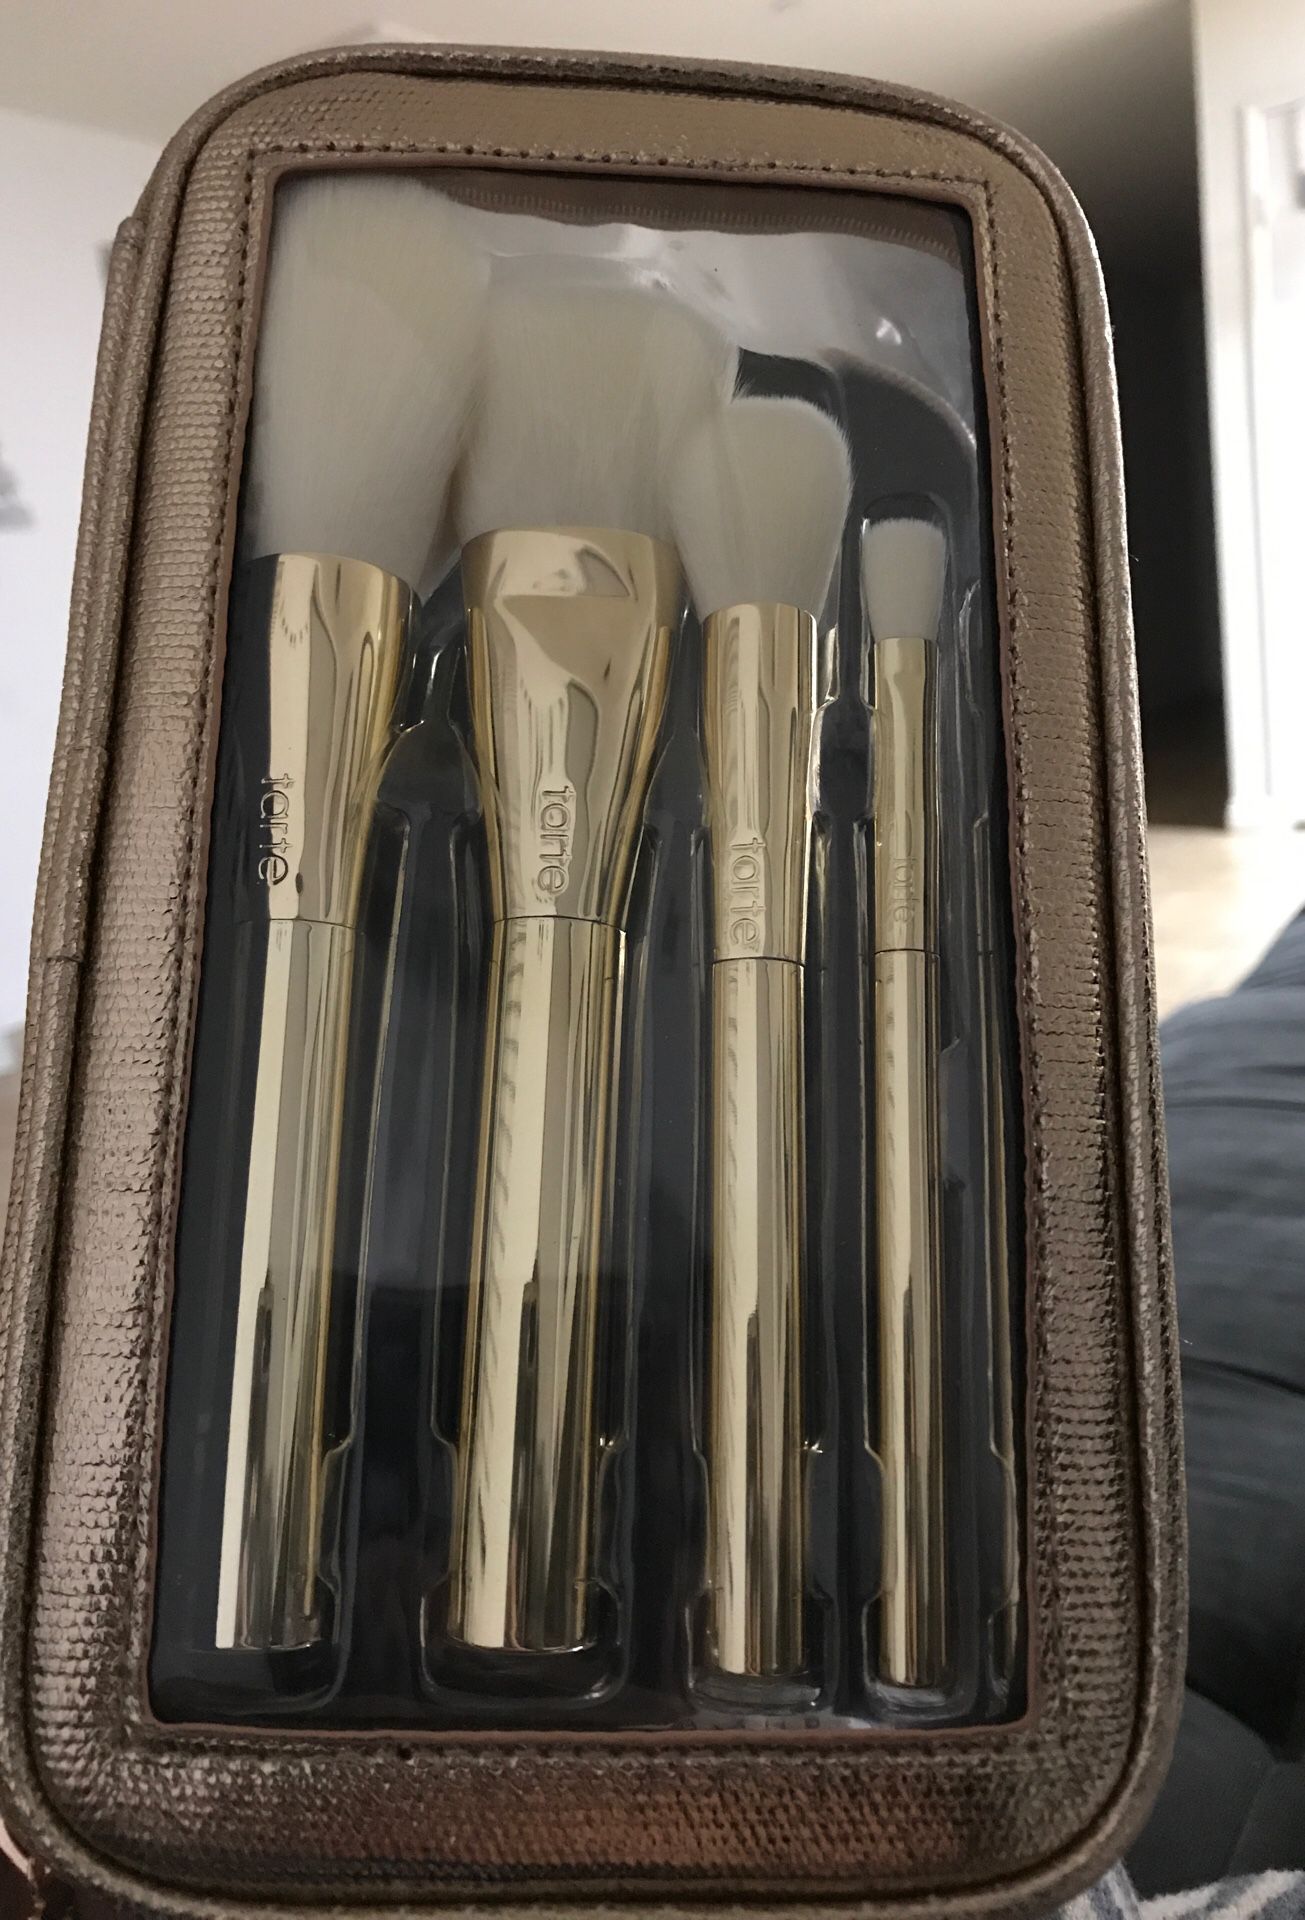 New! Tarte Gold dusters brush set!